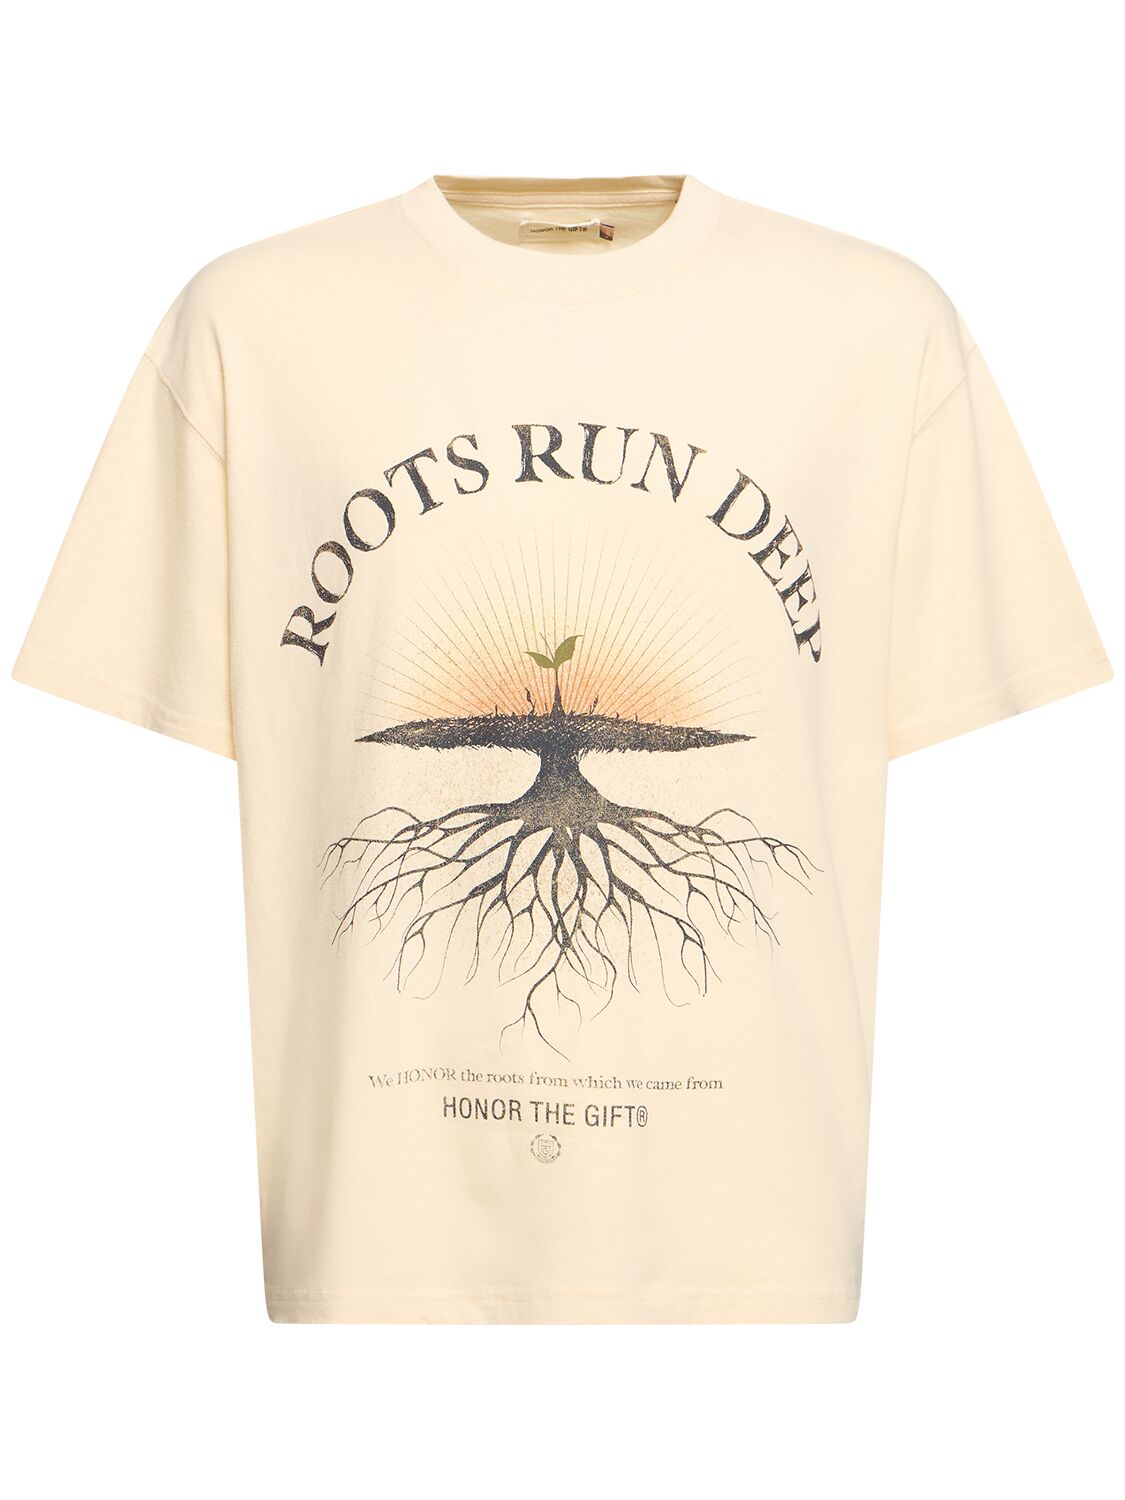 A-spring Roots Run Deep S/s-shirt